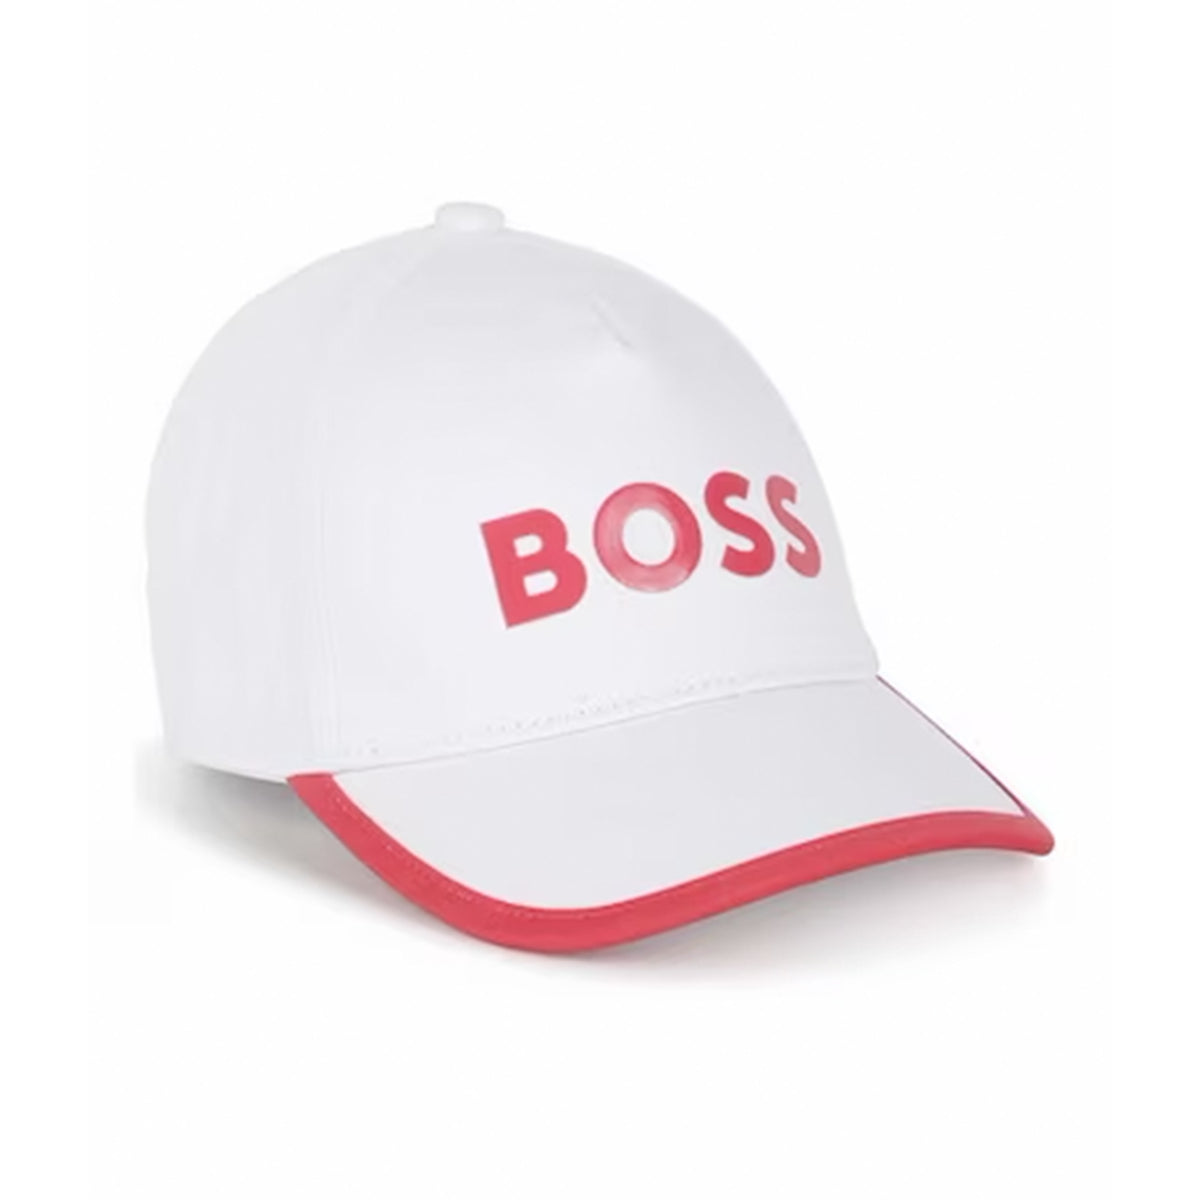 כובע מצחייה BOSS הדפס לוגו לילדות